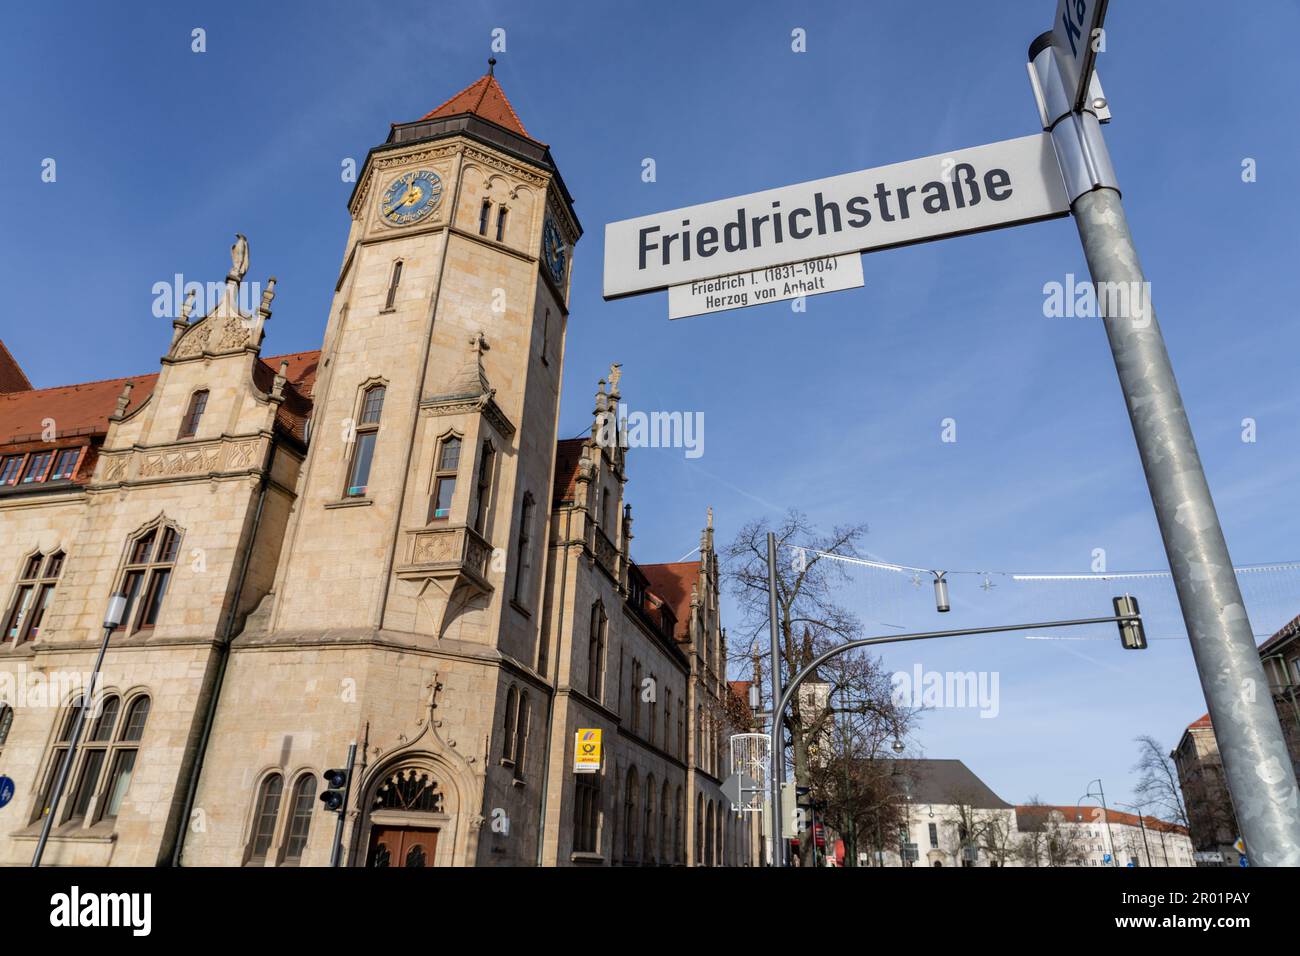 Bureau de poste friedrichstrasse, Dessau, République fédérale d'Allemagne. Banque D'Images